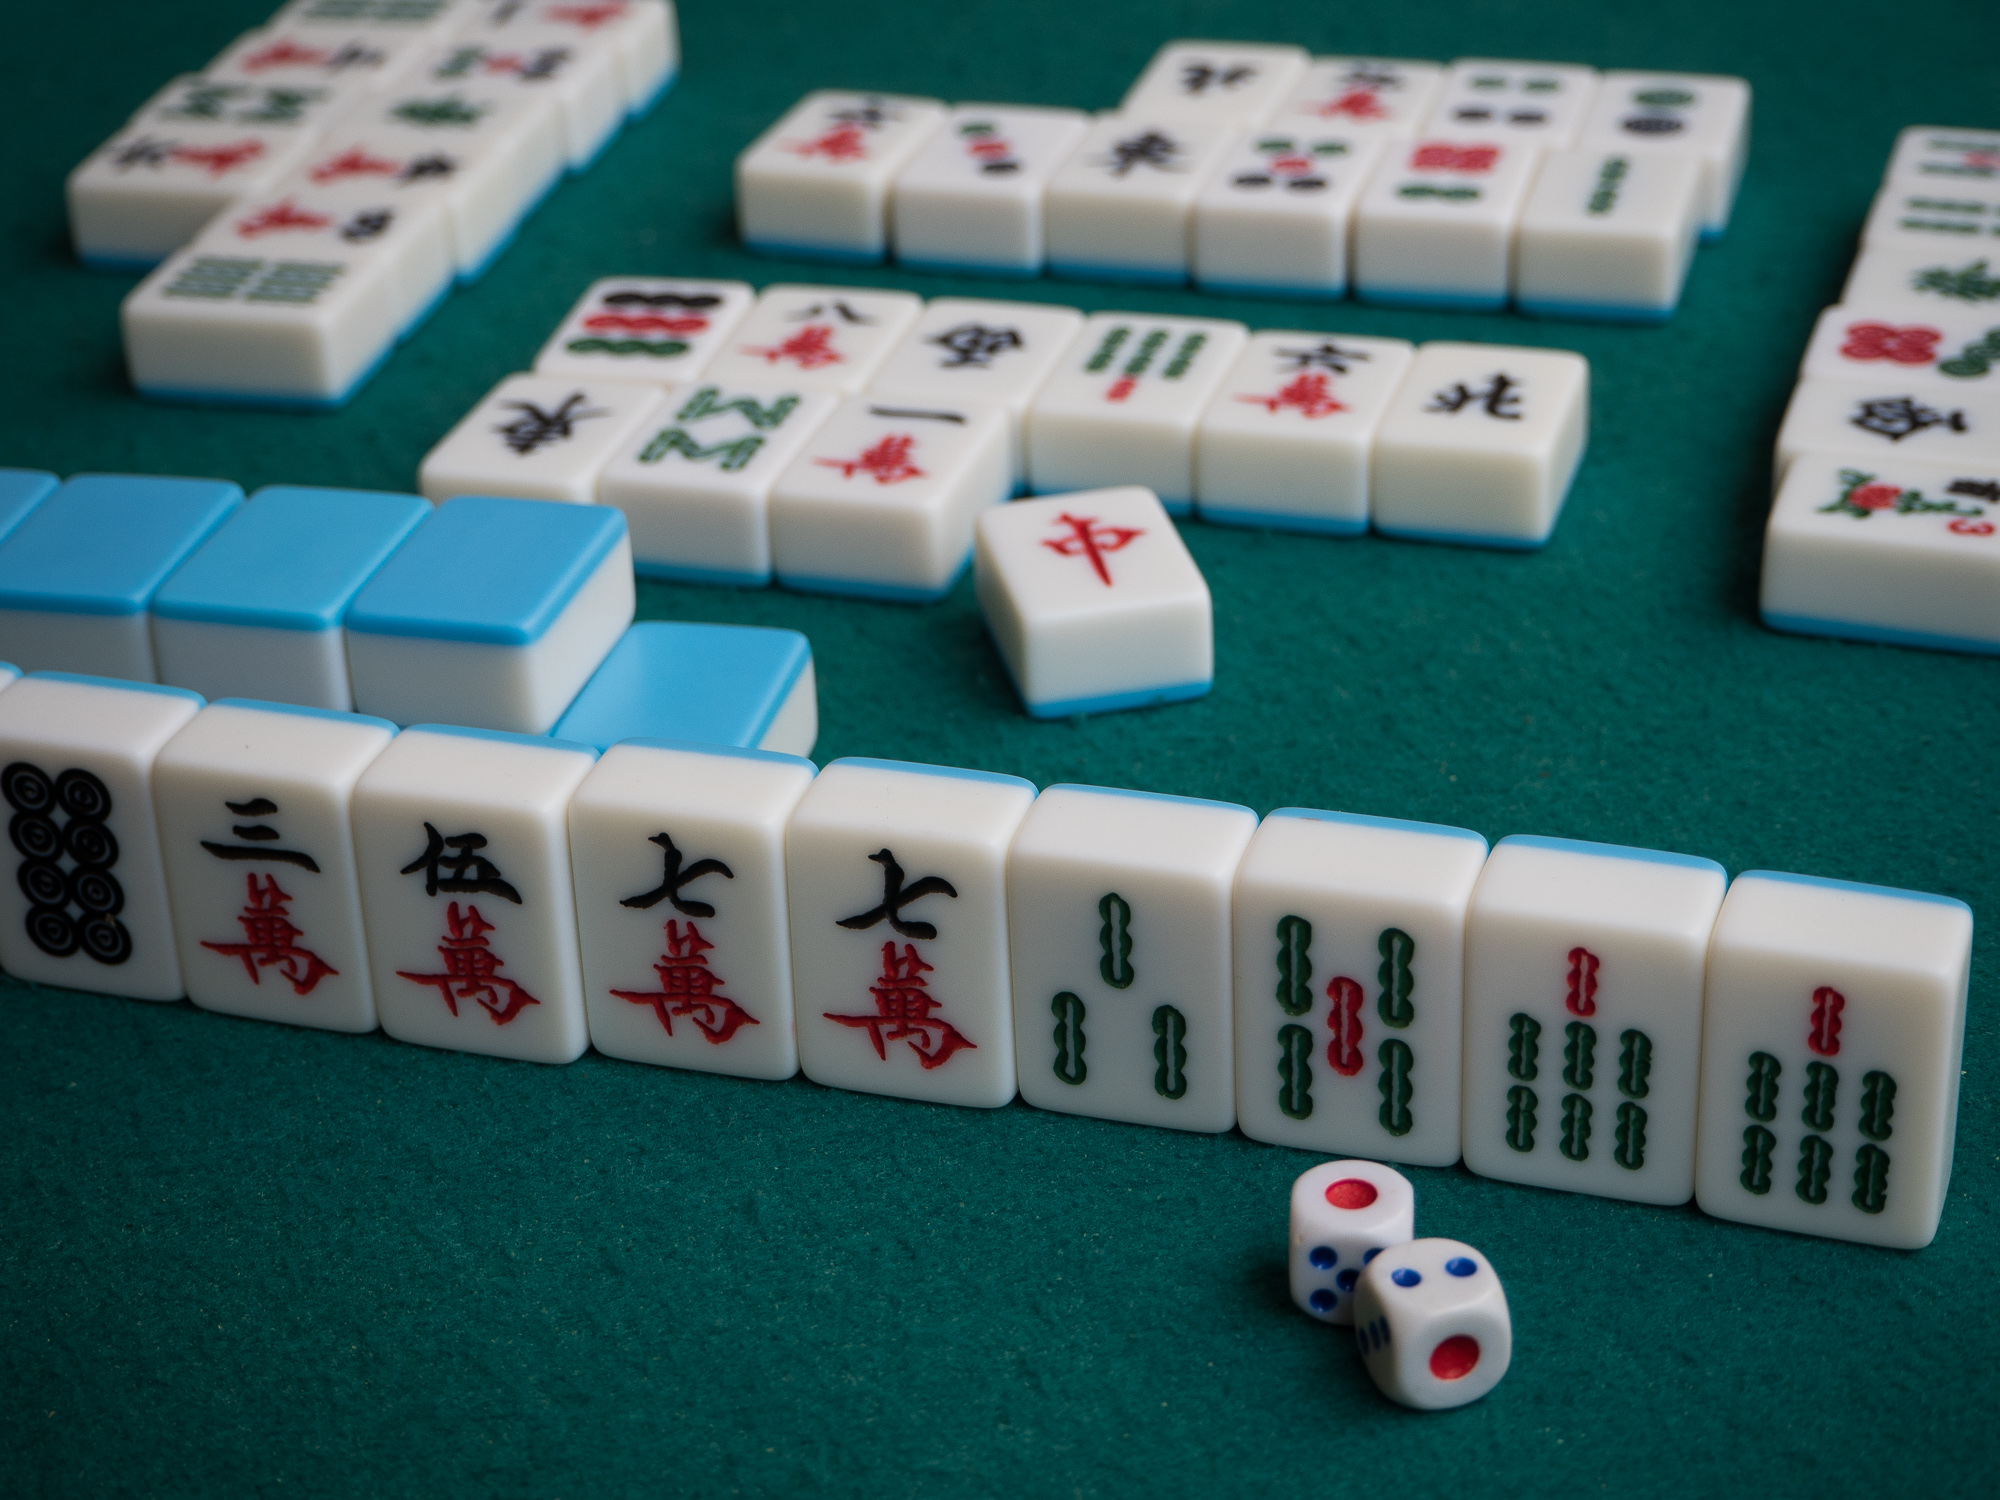 Mahjong Solitaire Refresh  Programas descargables Nintendo Switch